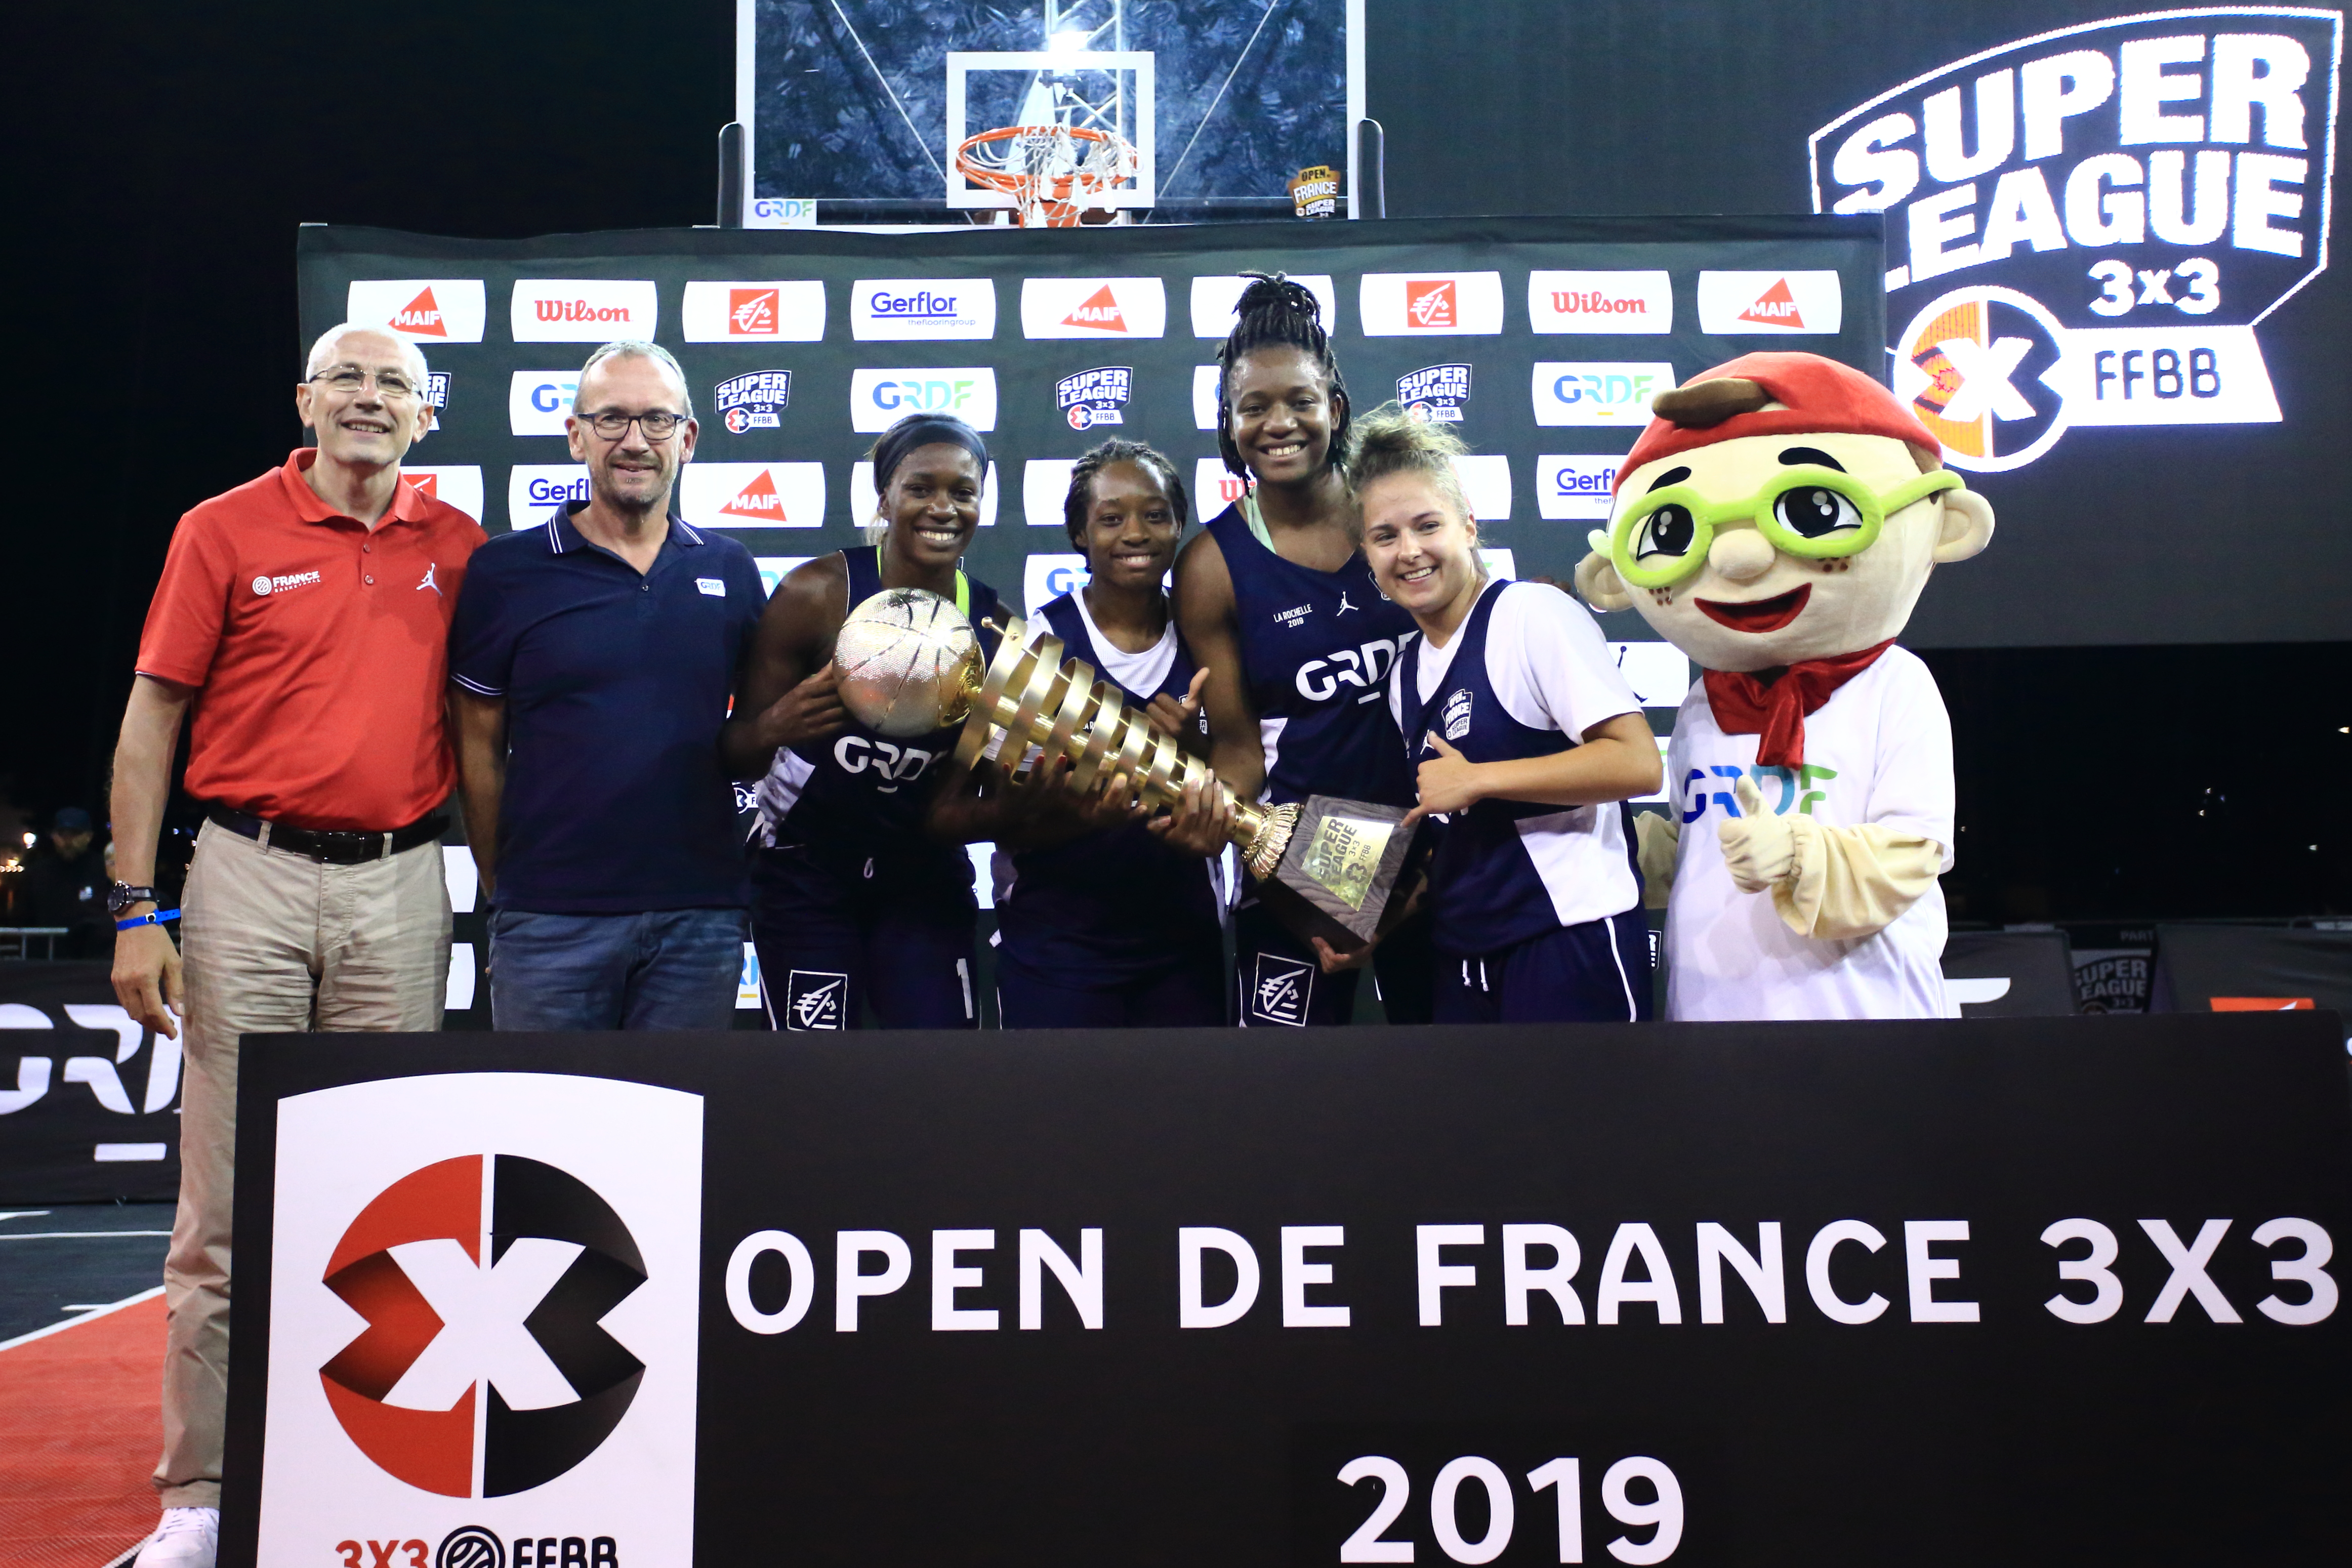 Vainqueures Open de France 2019